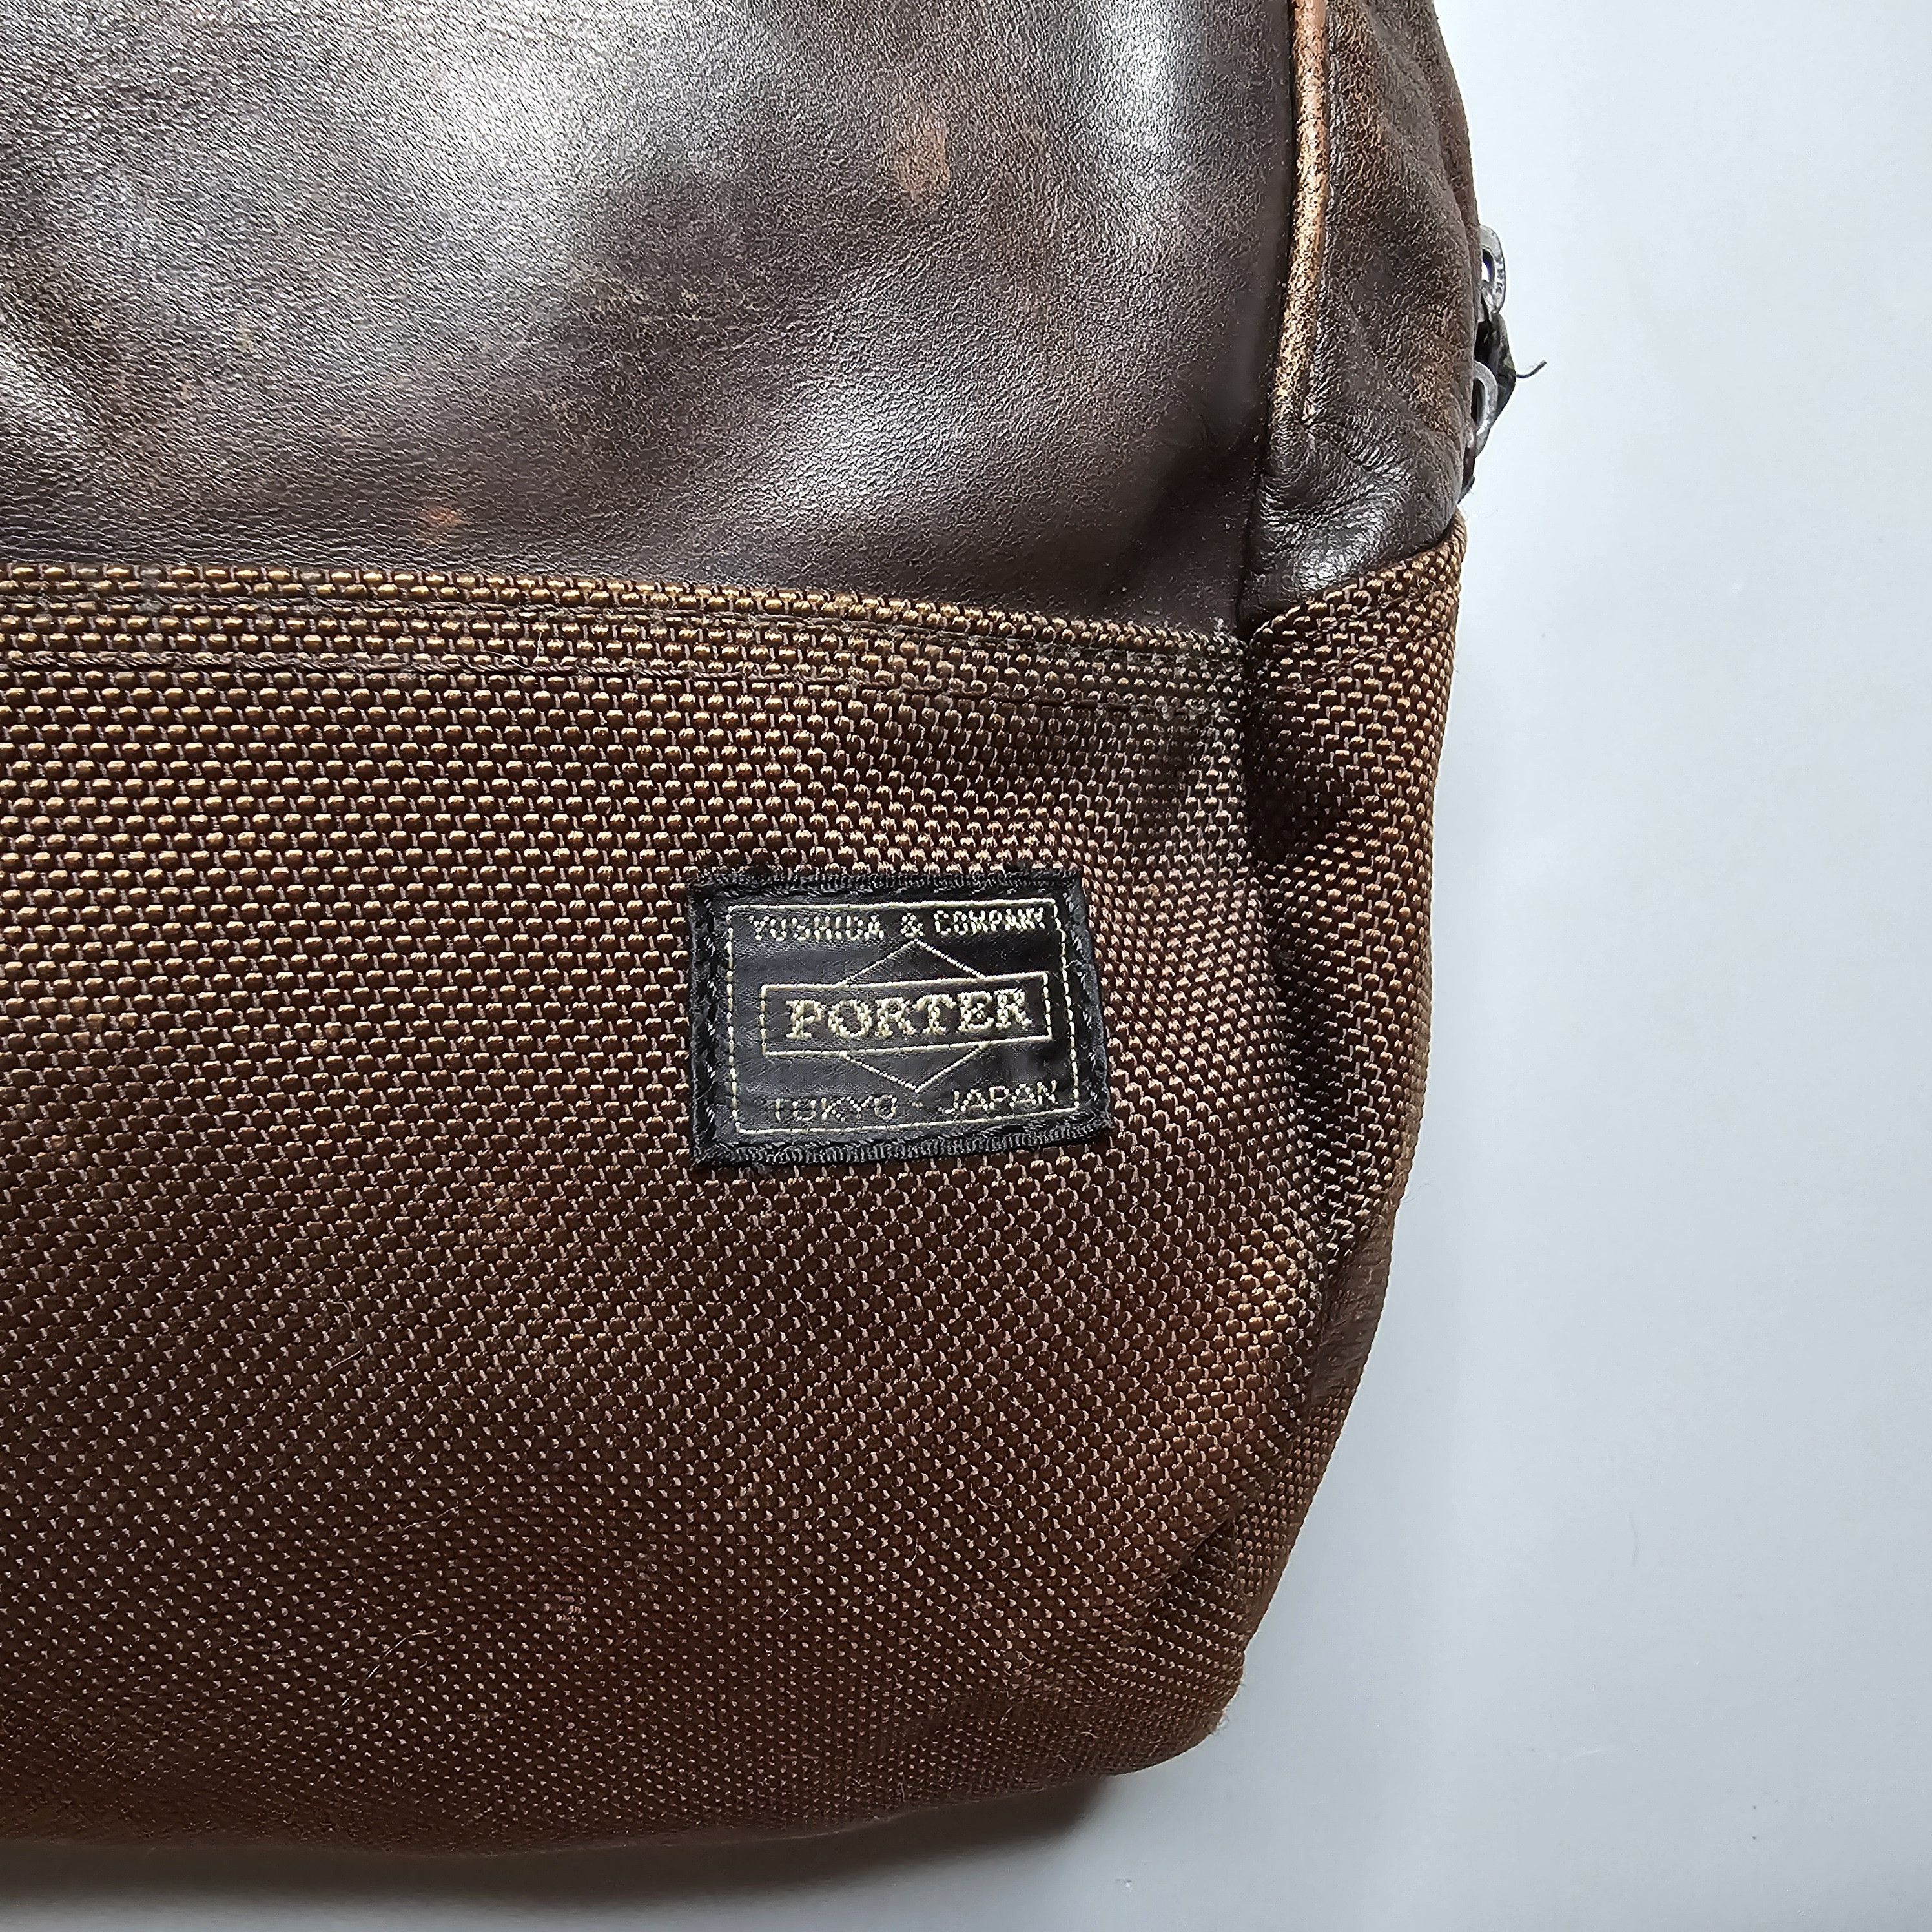 Yoshida & Co. Porter - Zoom Leather Backpack - 9